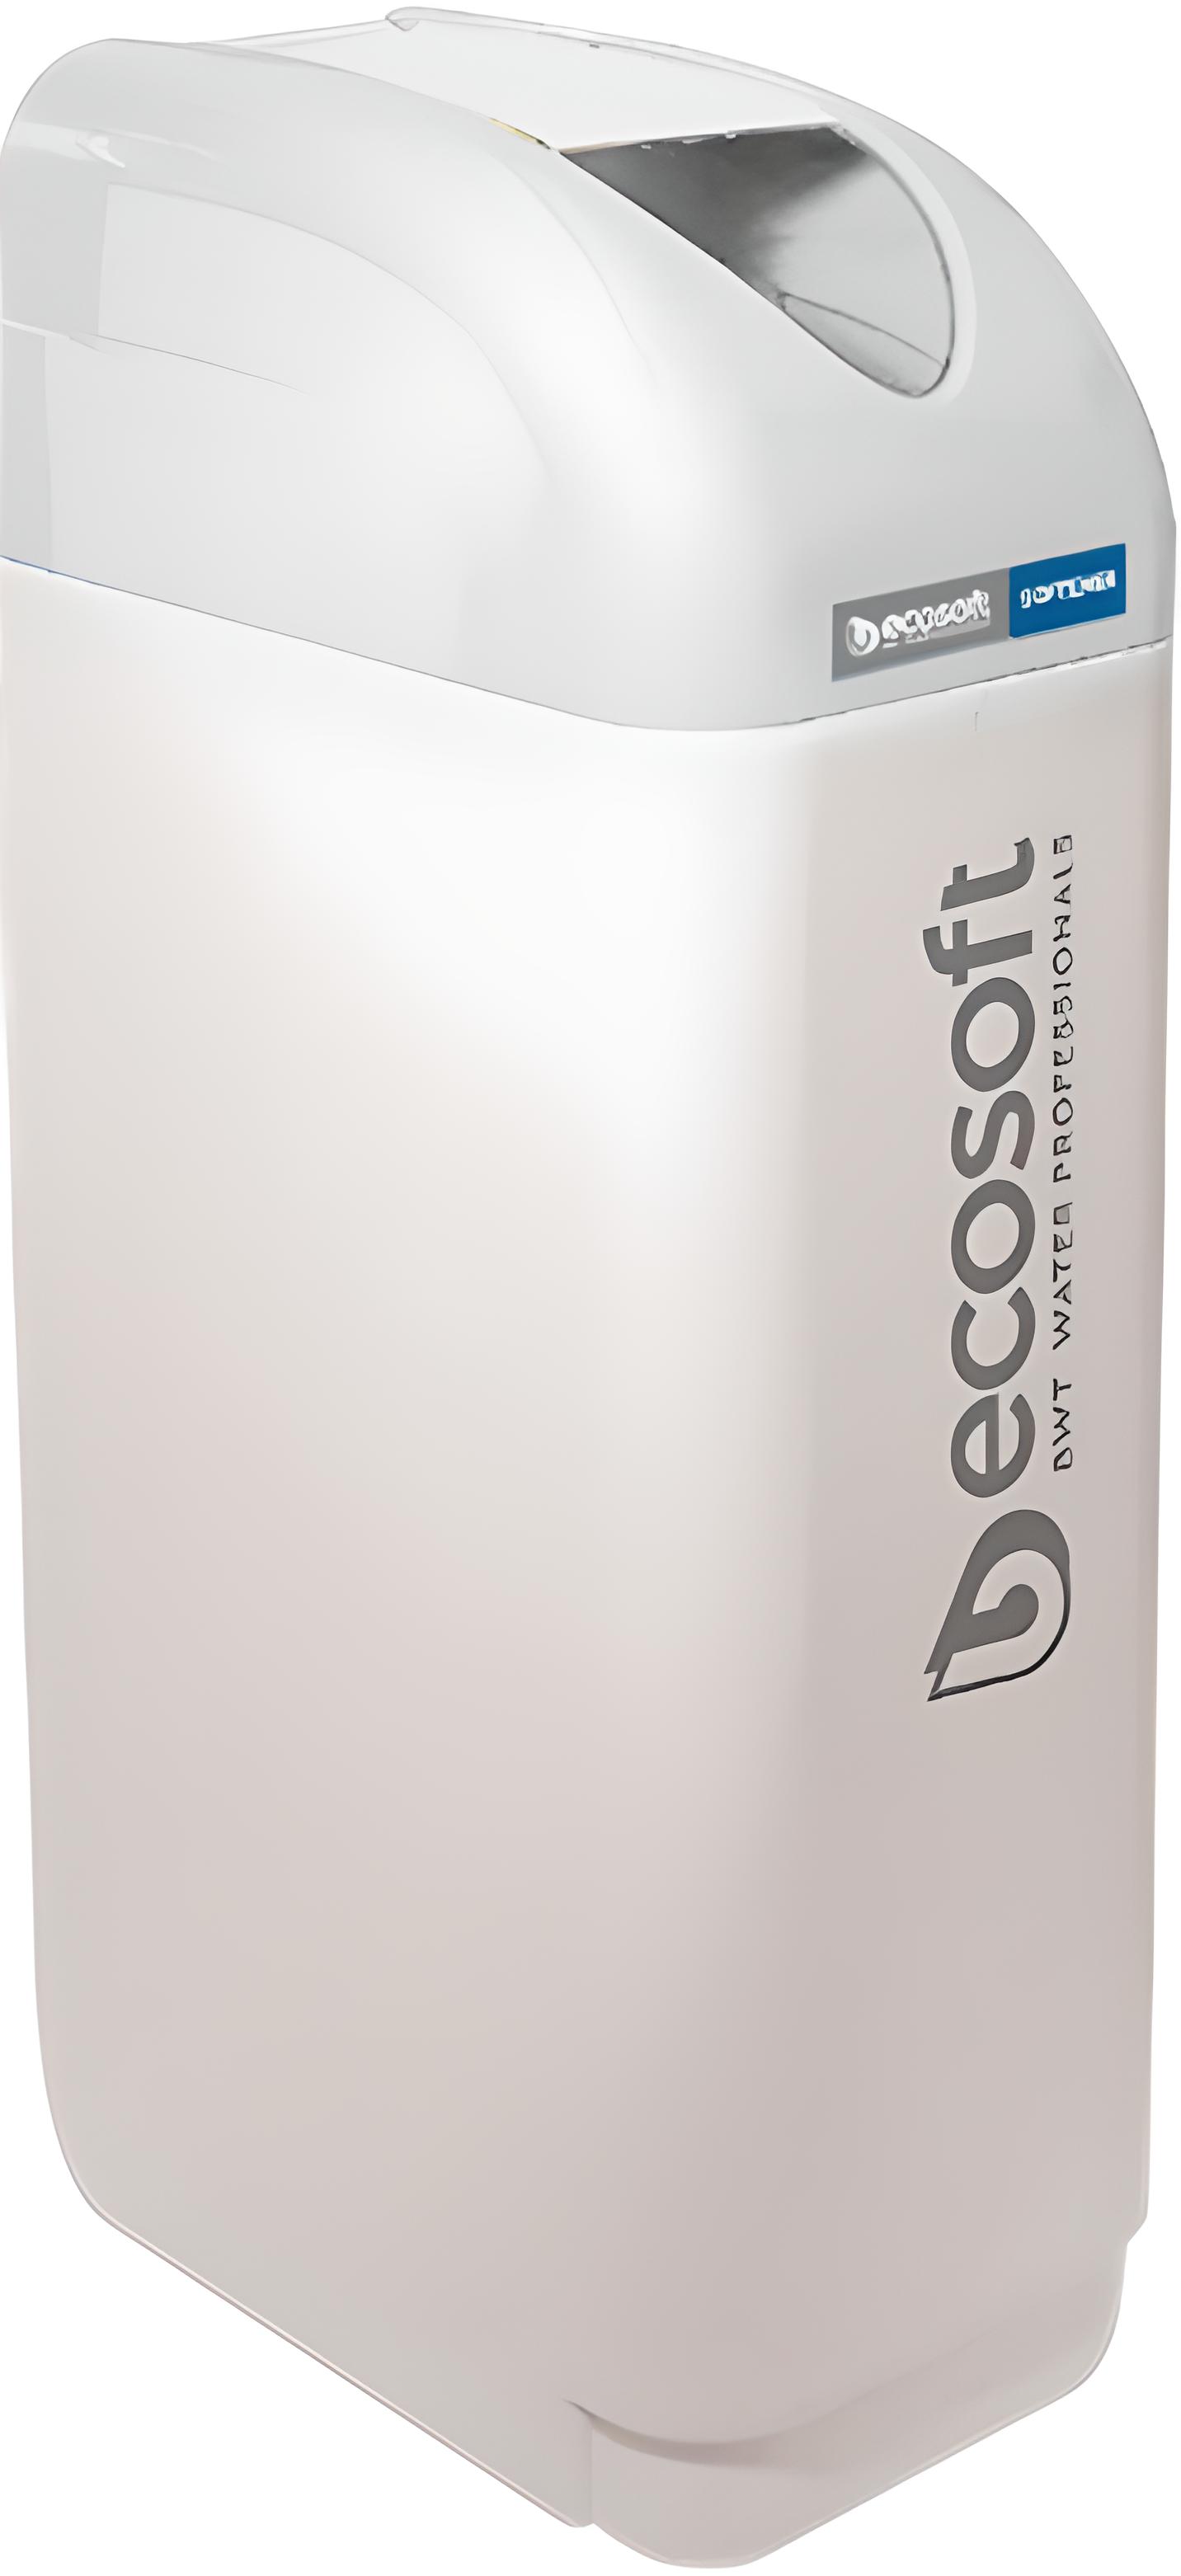 Система очистки воды Ecosoft P'ure Light FU1035CABECE в интернет-магазине, главное фото